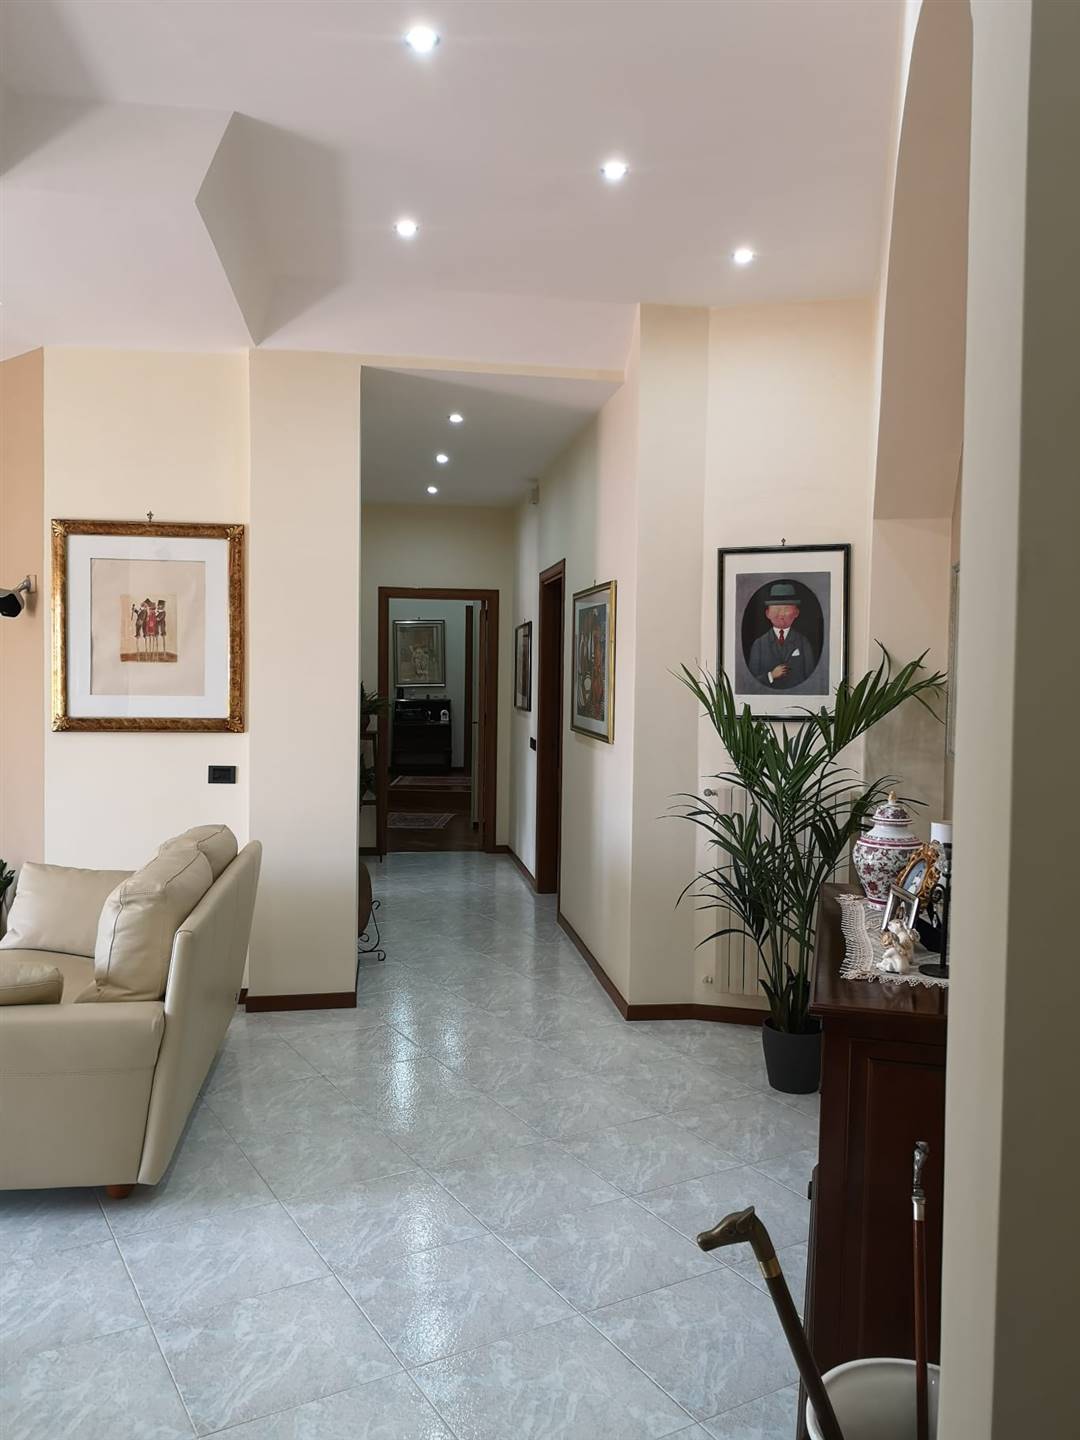 Appartamento sito in Salerno, località Pastena centro, alla Via Giovan Battista Amendola ed ubicato al 6° ed ultimo piano dello stabile. L'immobile 